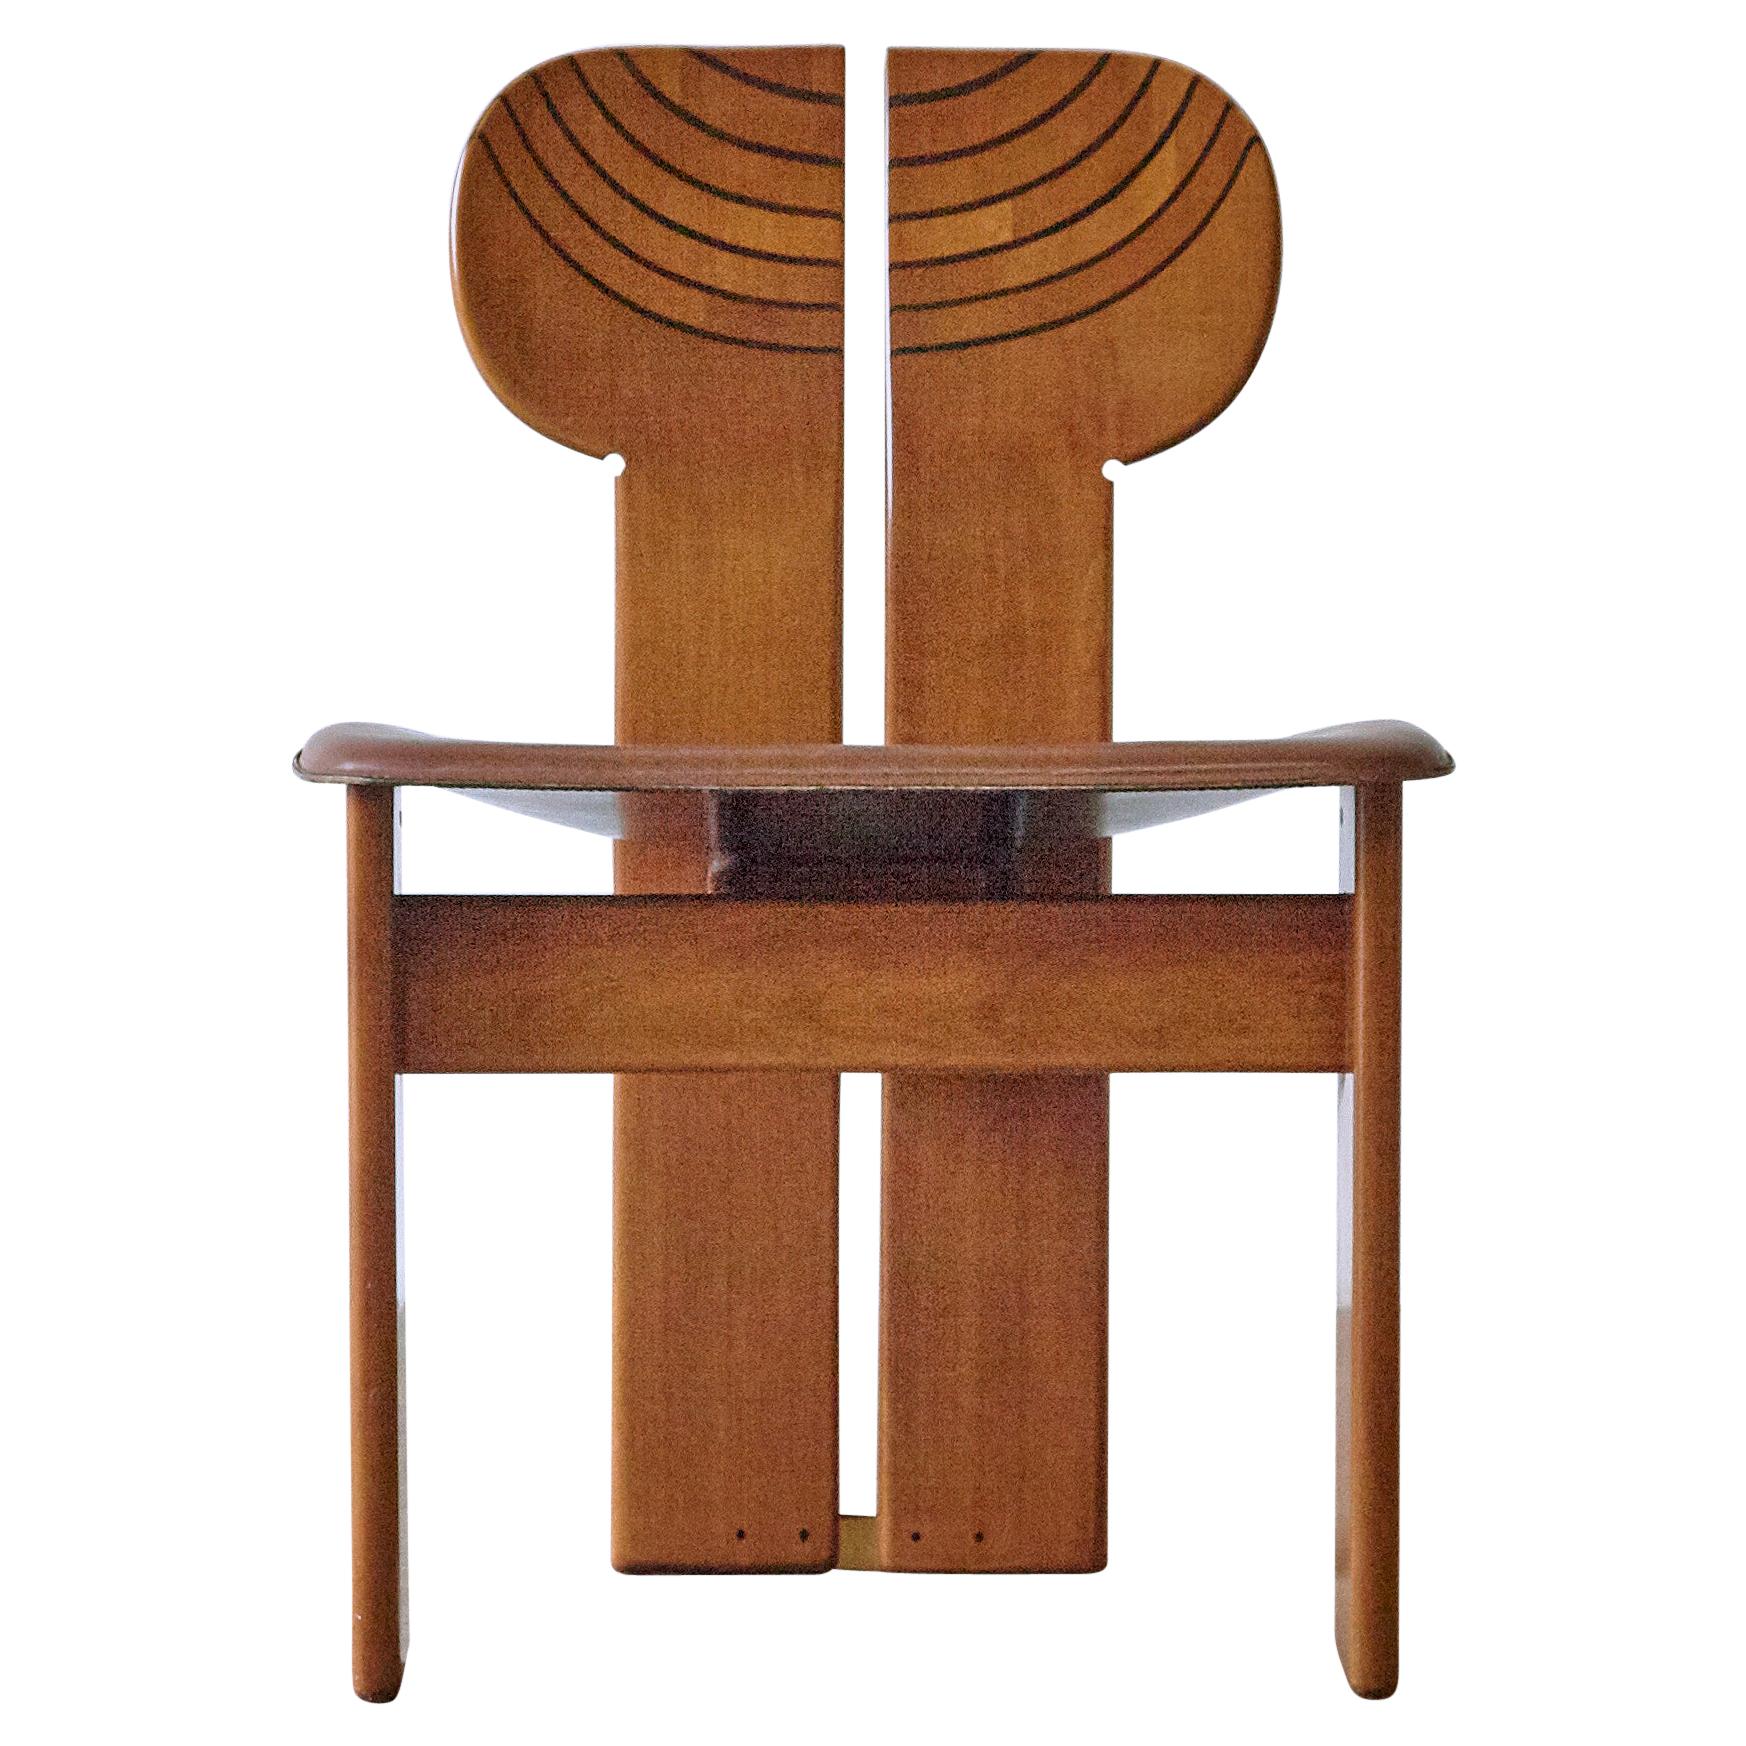 Africa Chair by Afra & Tobia Scarpa, Maxalto, Artona Series, Italy 1970s-1980s